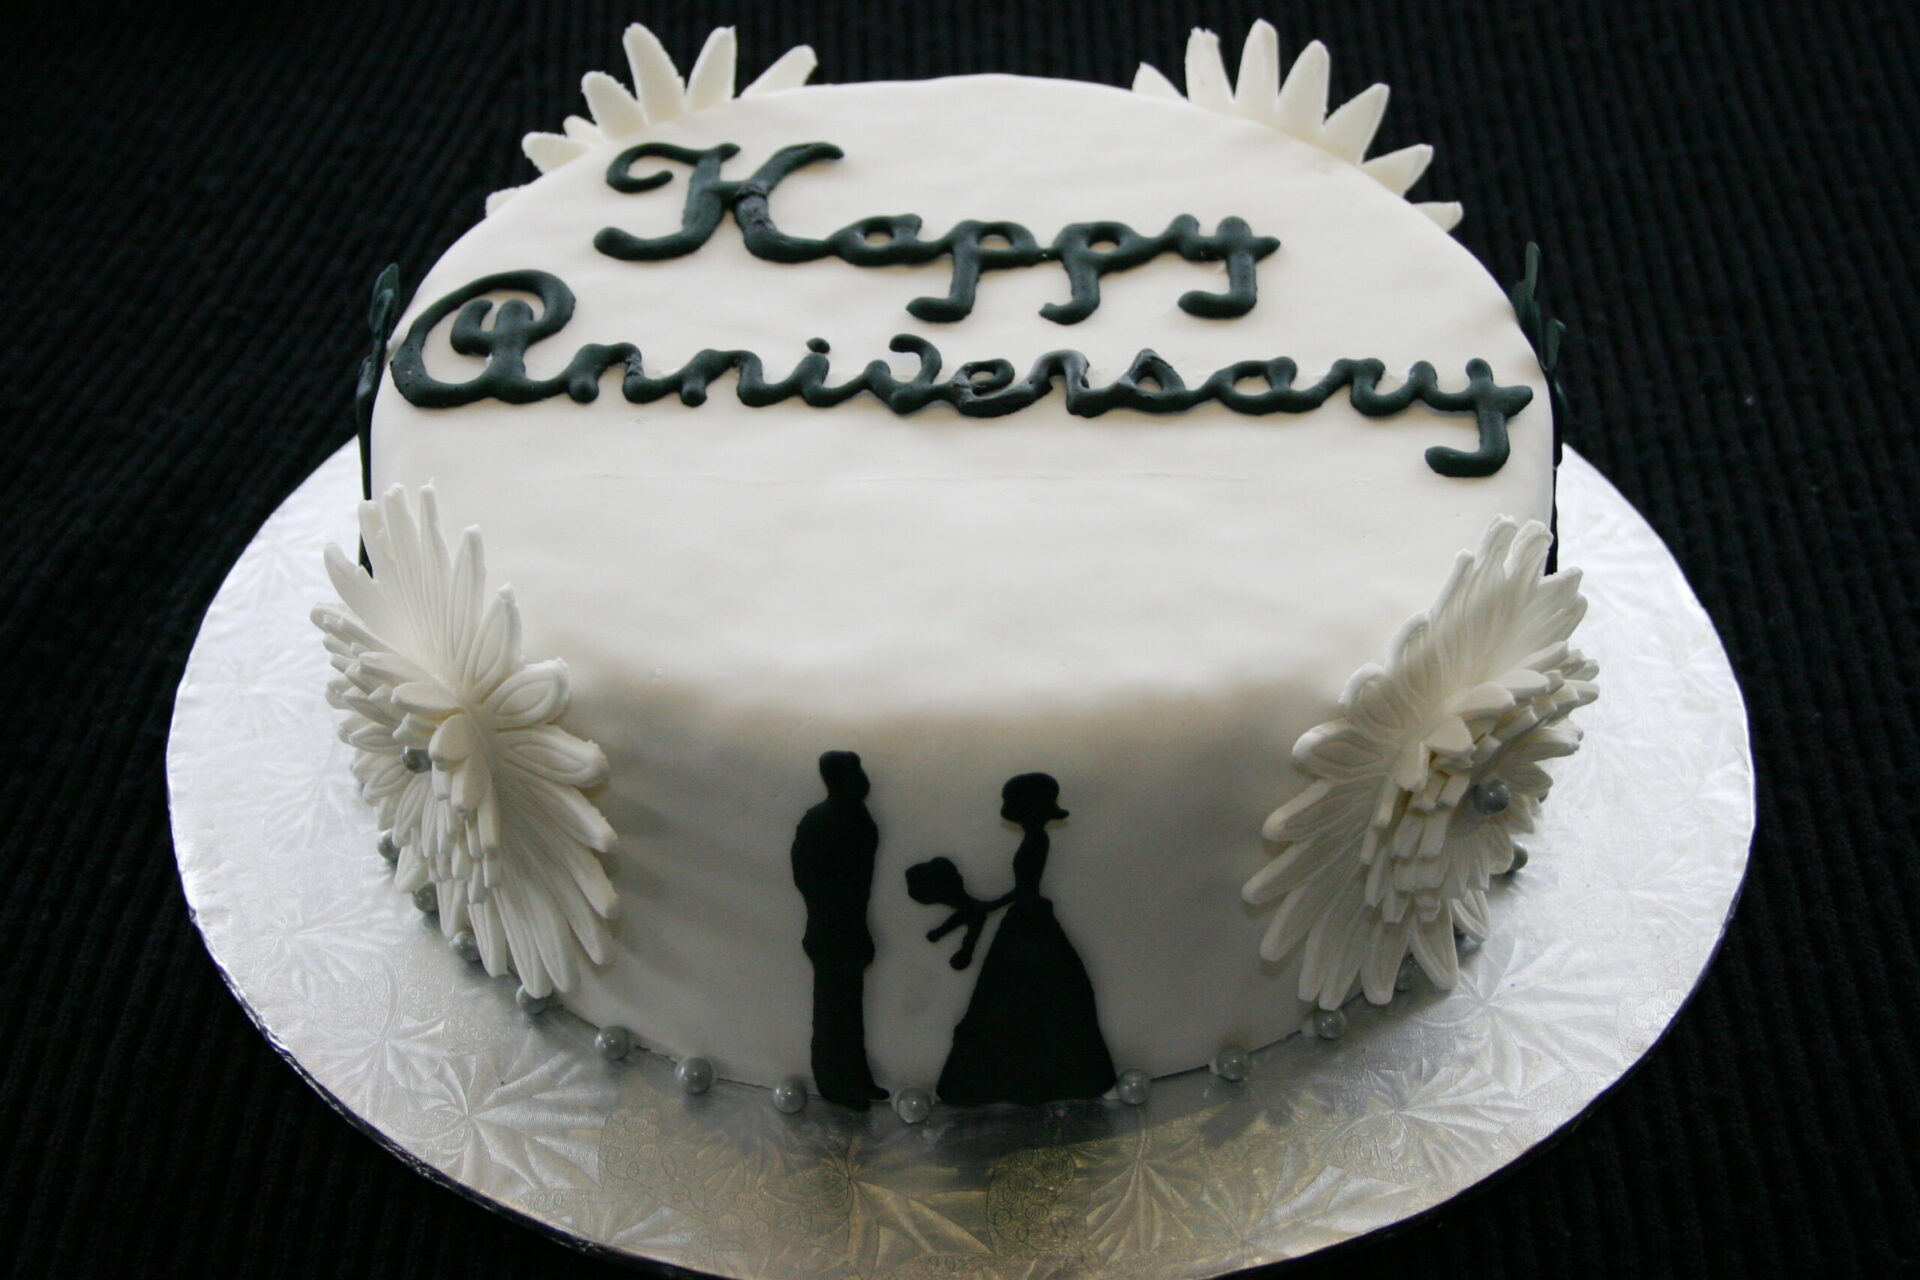 Send Wedding Anniversary cake in Gurgaon | Best Anniversary Gift